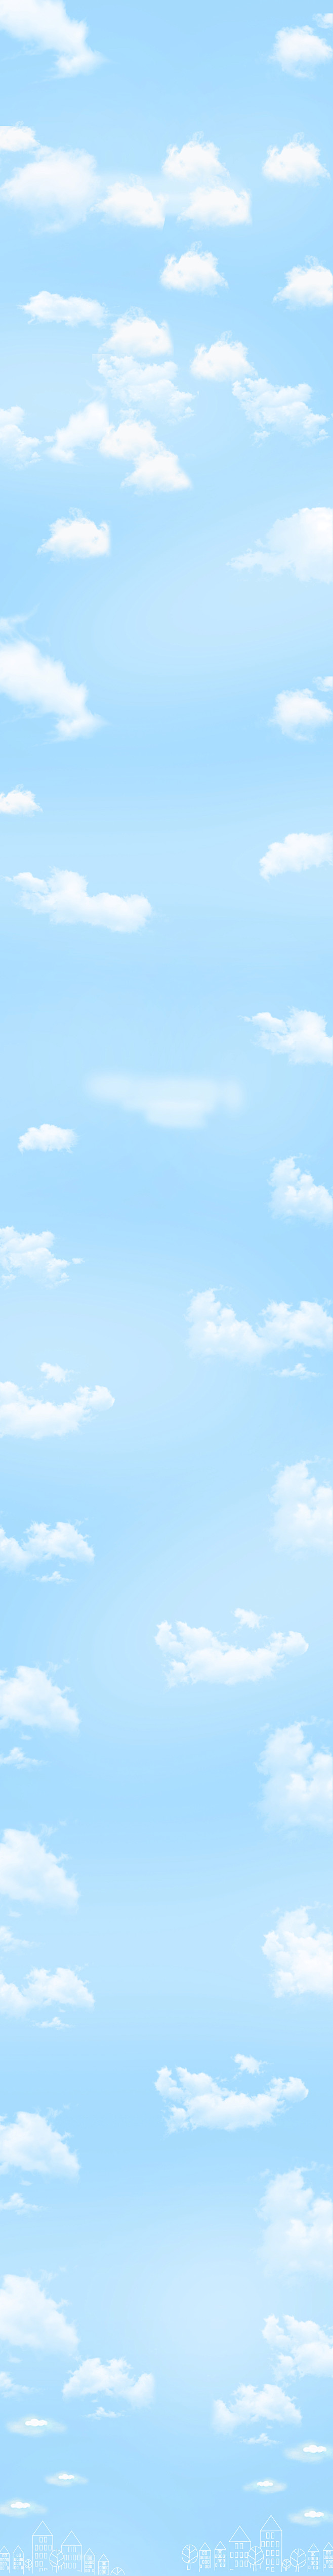 【20150318】【背景】-蓝天白云-...